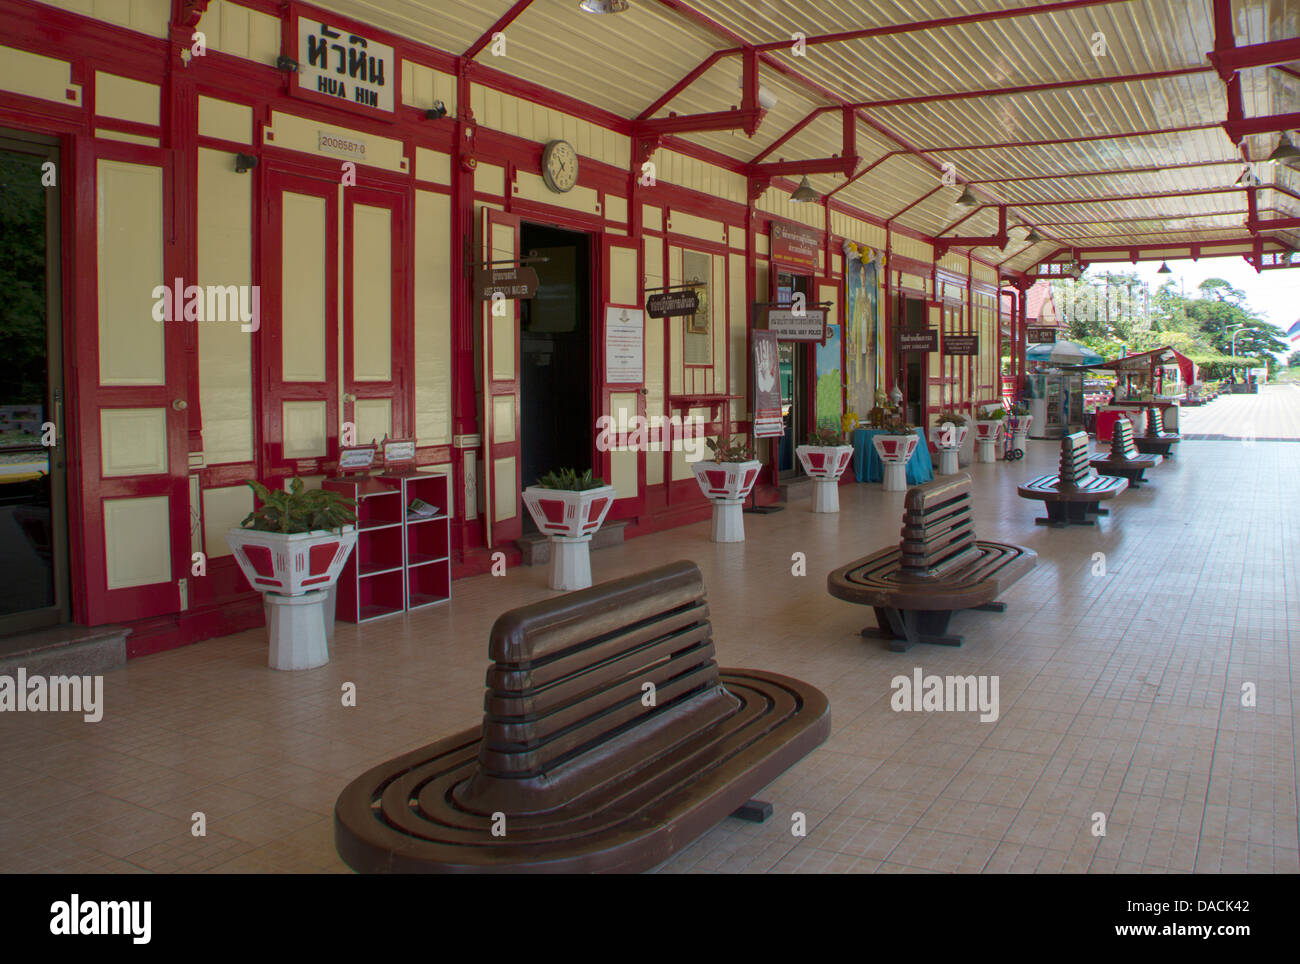 La plate-forme principale à gare de hua hin dans la province de Prachuap Khiri Khan, Thaïlande Banque D'Images